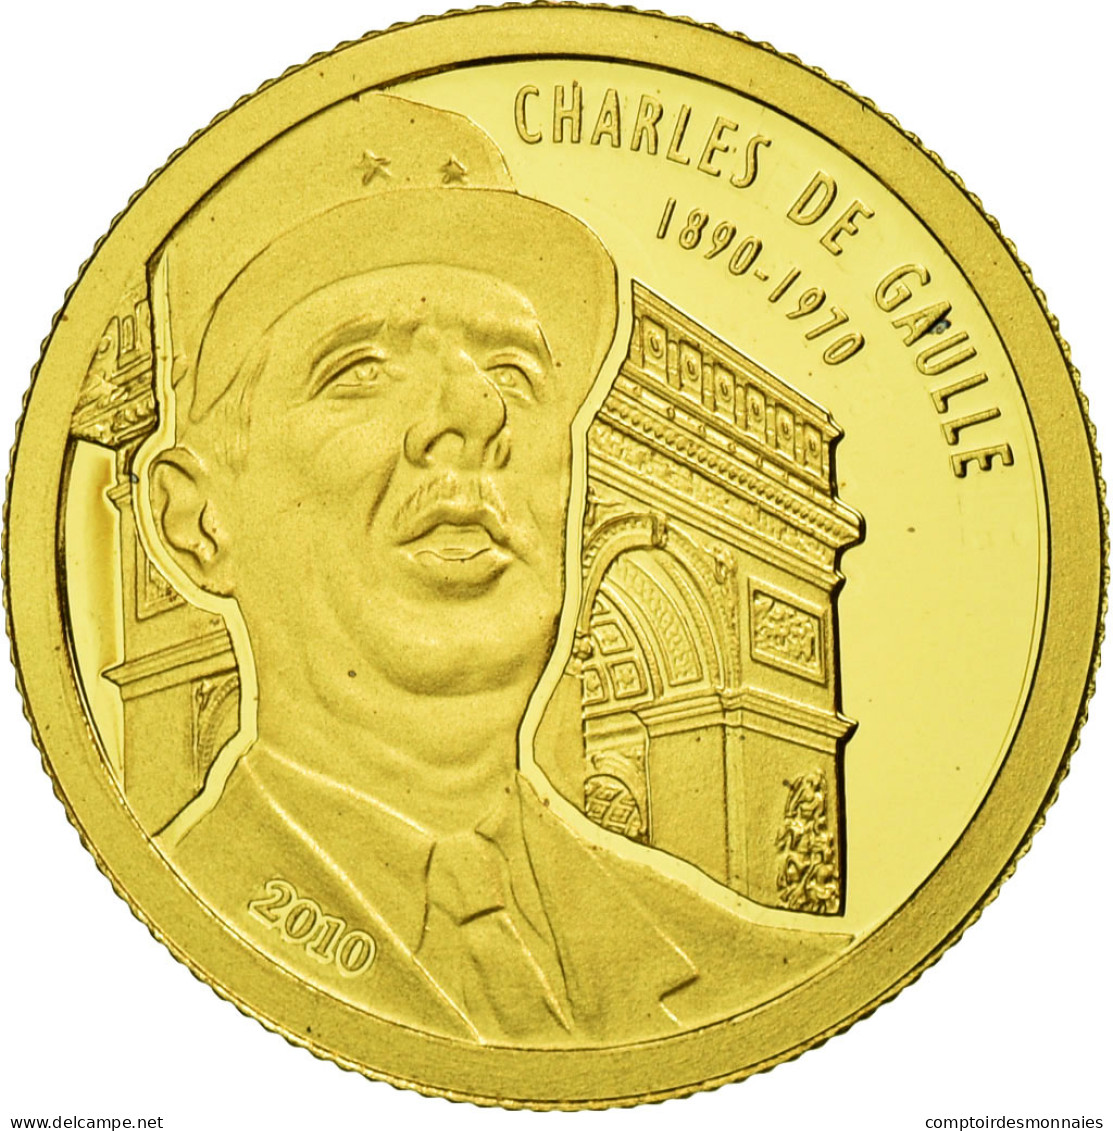 Benin, 1500 Francs CFA, Charles De Gaulle, 2010, FDC, Or - Benín